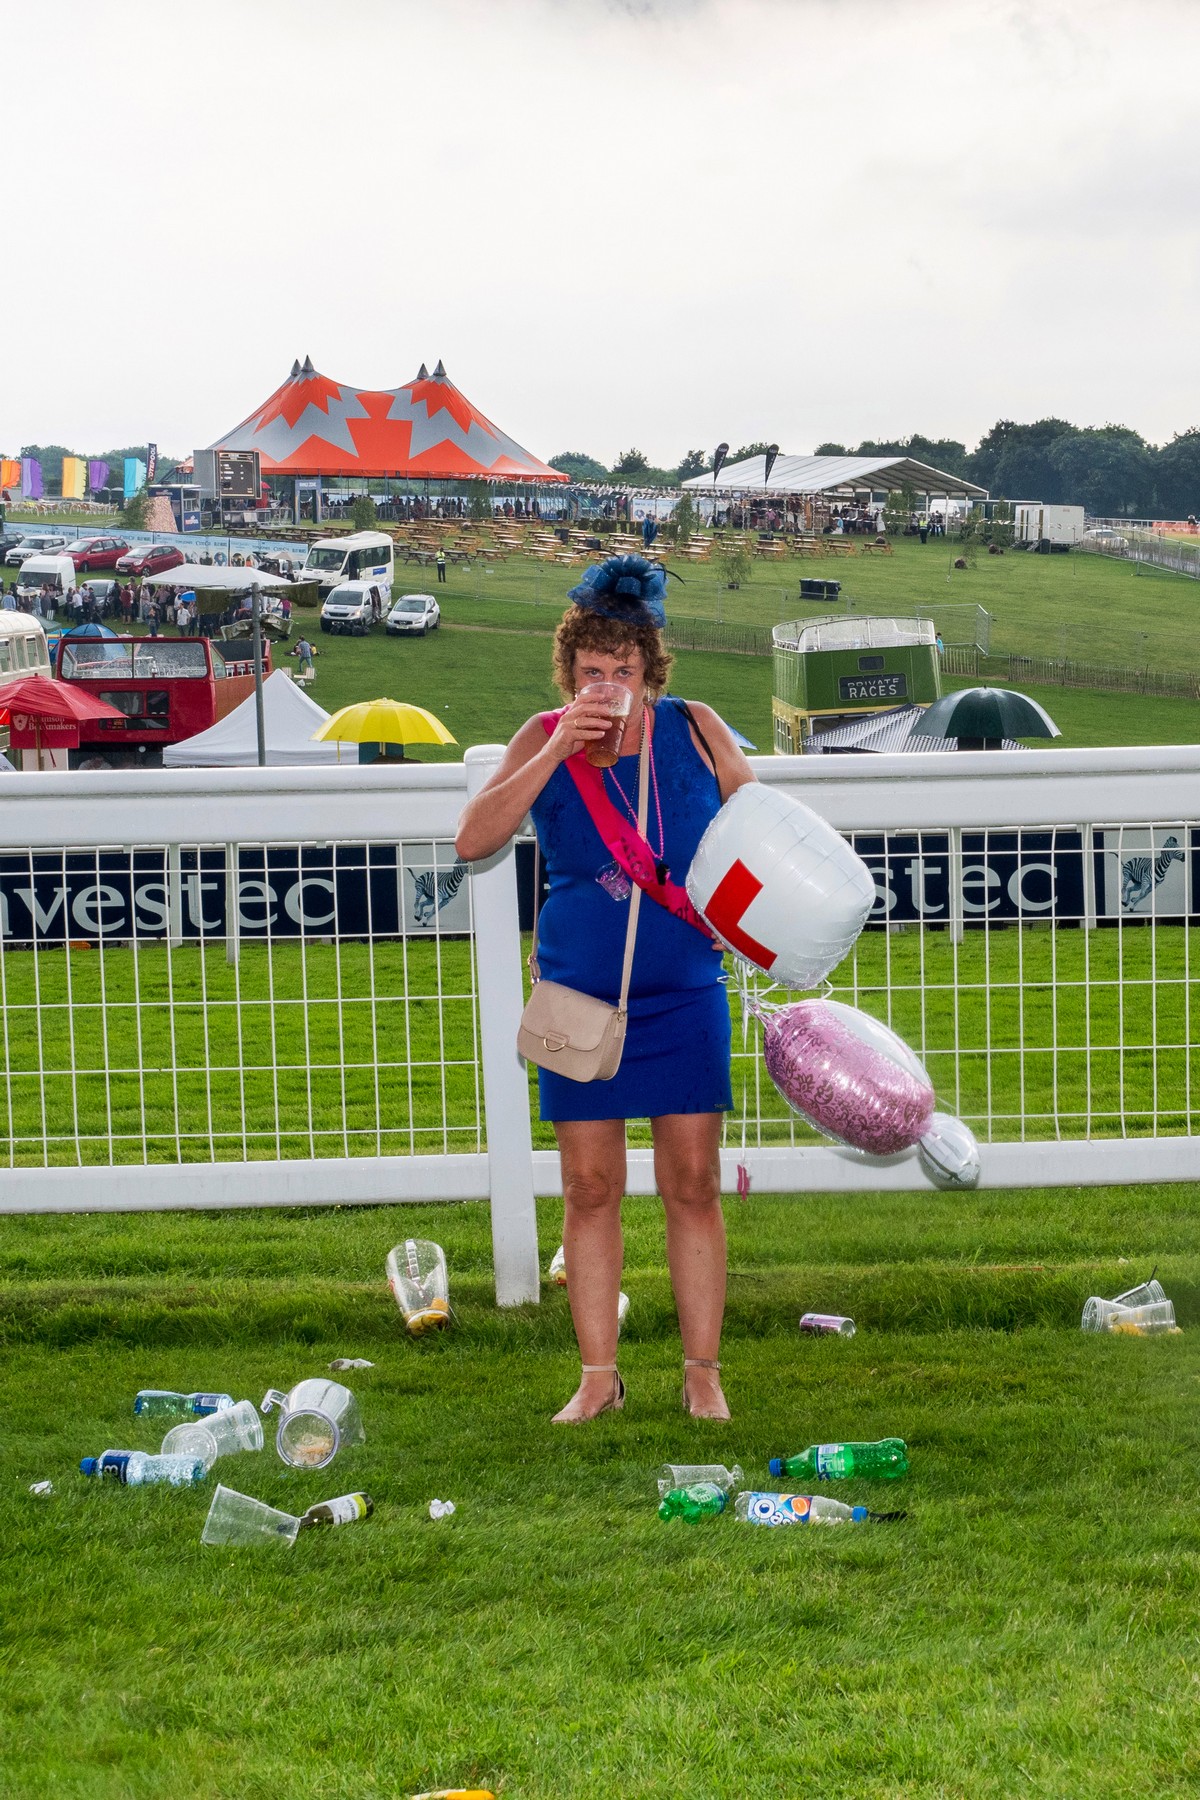 Фотограф два года снимает выходки пьяных британцев на скачках Британия,их нравы,пьянство,скачки